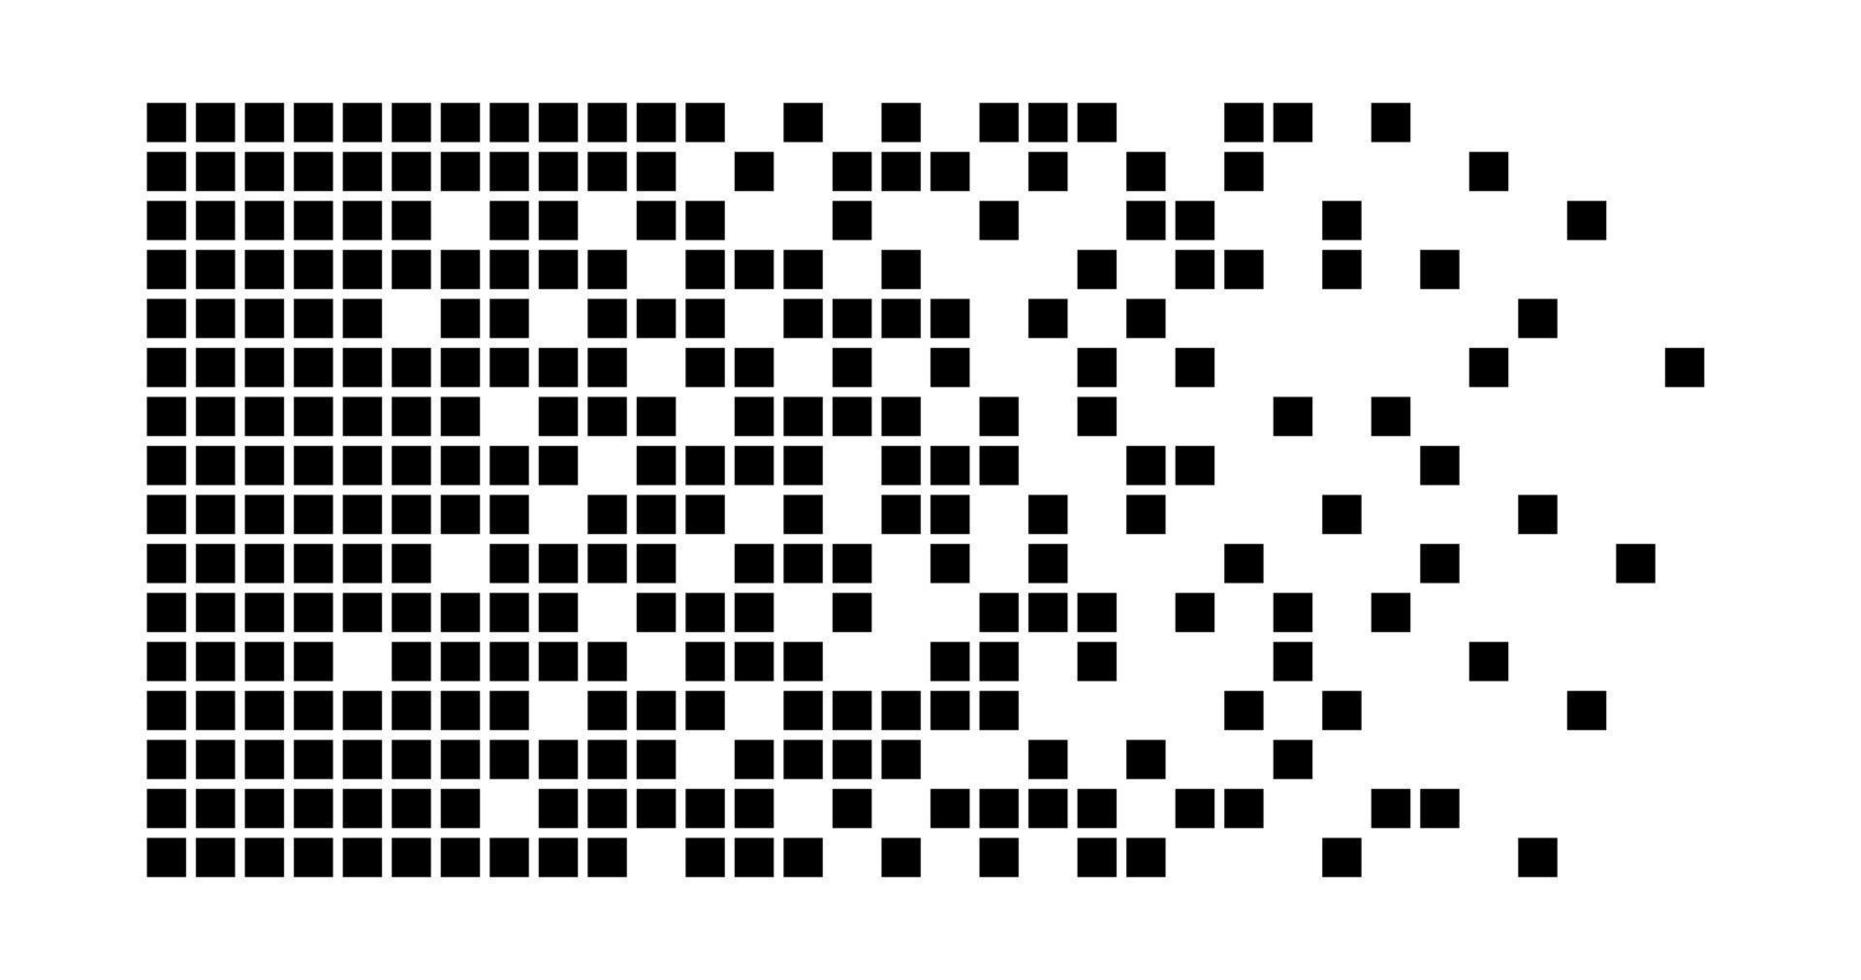 fondo de desintegración de píxeles. fragmento de semitono. patrón de puntos dispersos. concepto de desintegración. texturas de mosaico de píxeles cuadrados con partículas cuadradas. Ilustración vectorial sobre fondo blanco vector